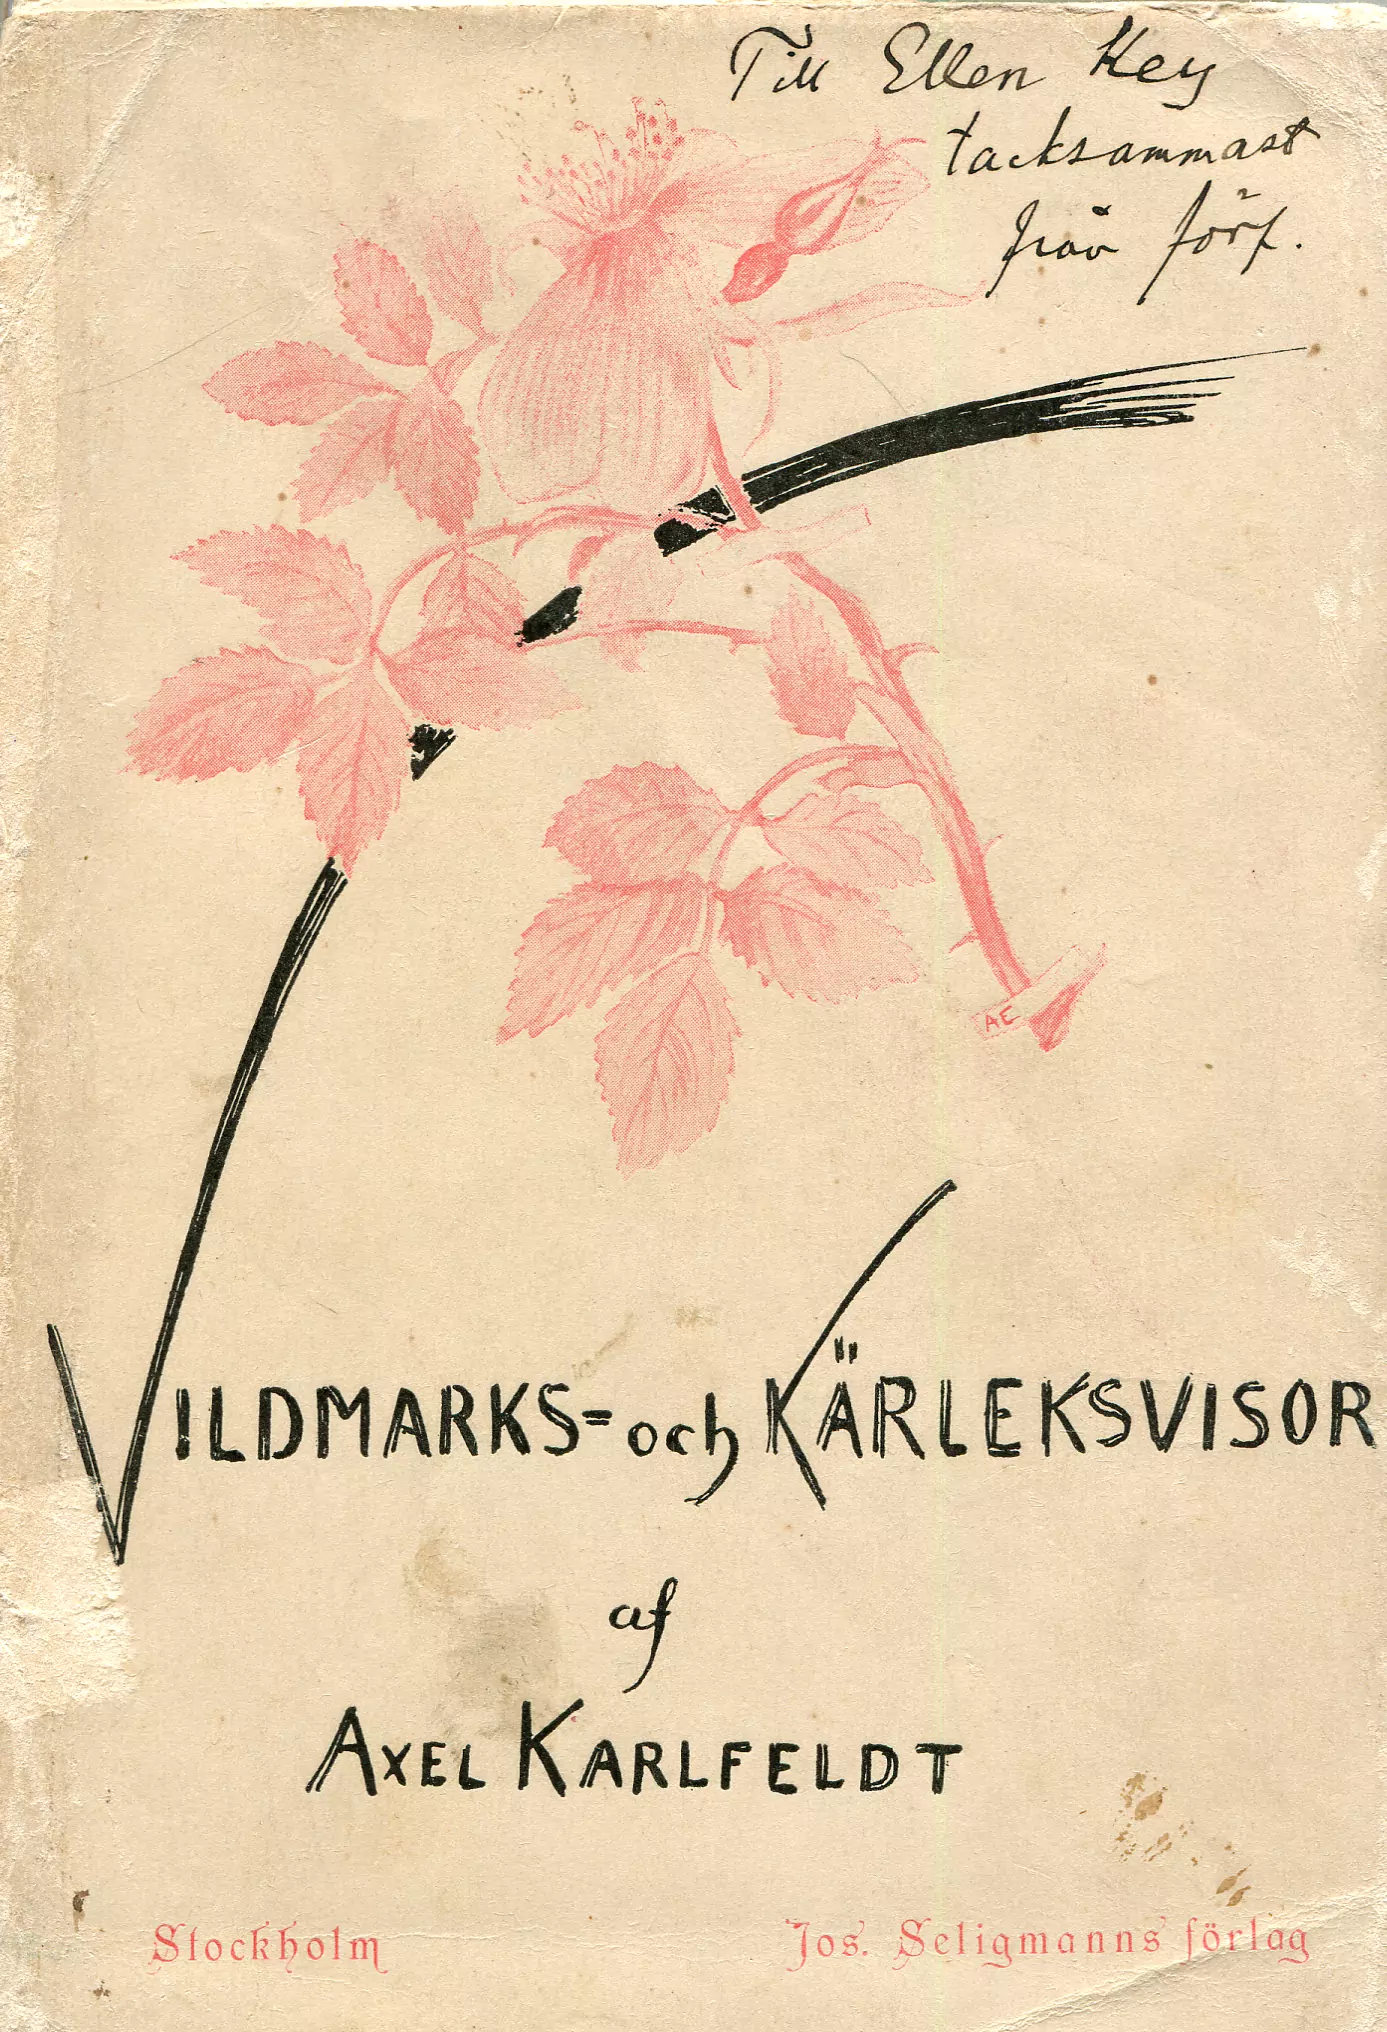 Vildmarks- och kärleksvisor, Stockholm 1895